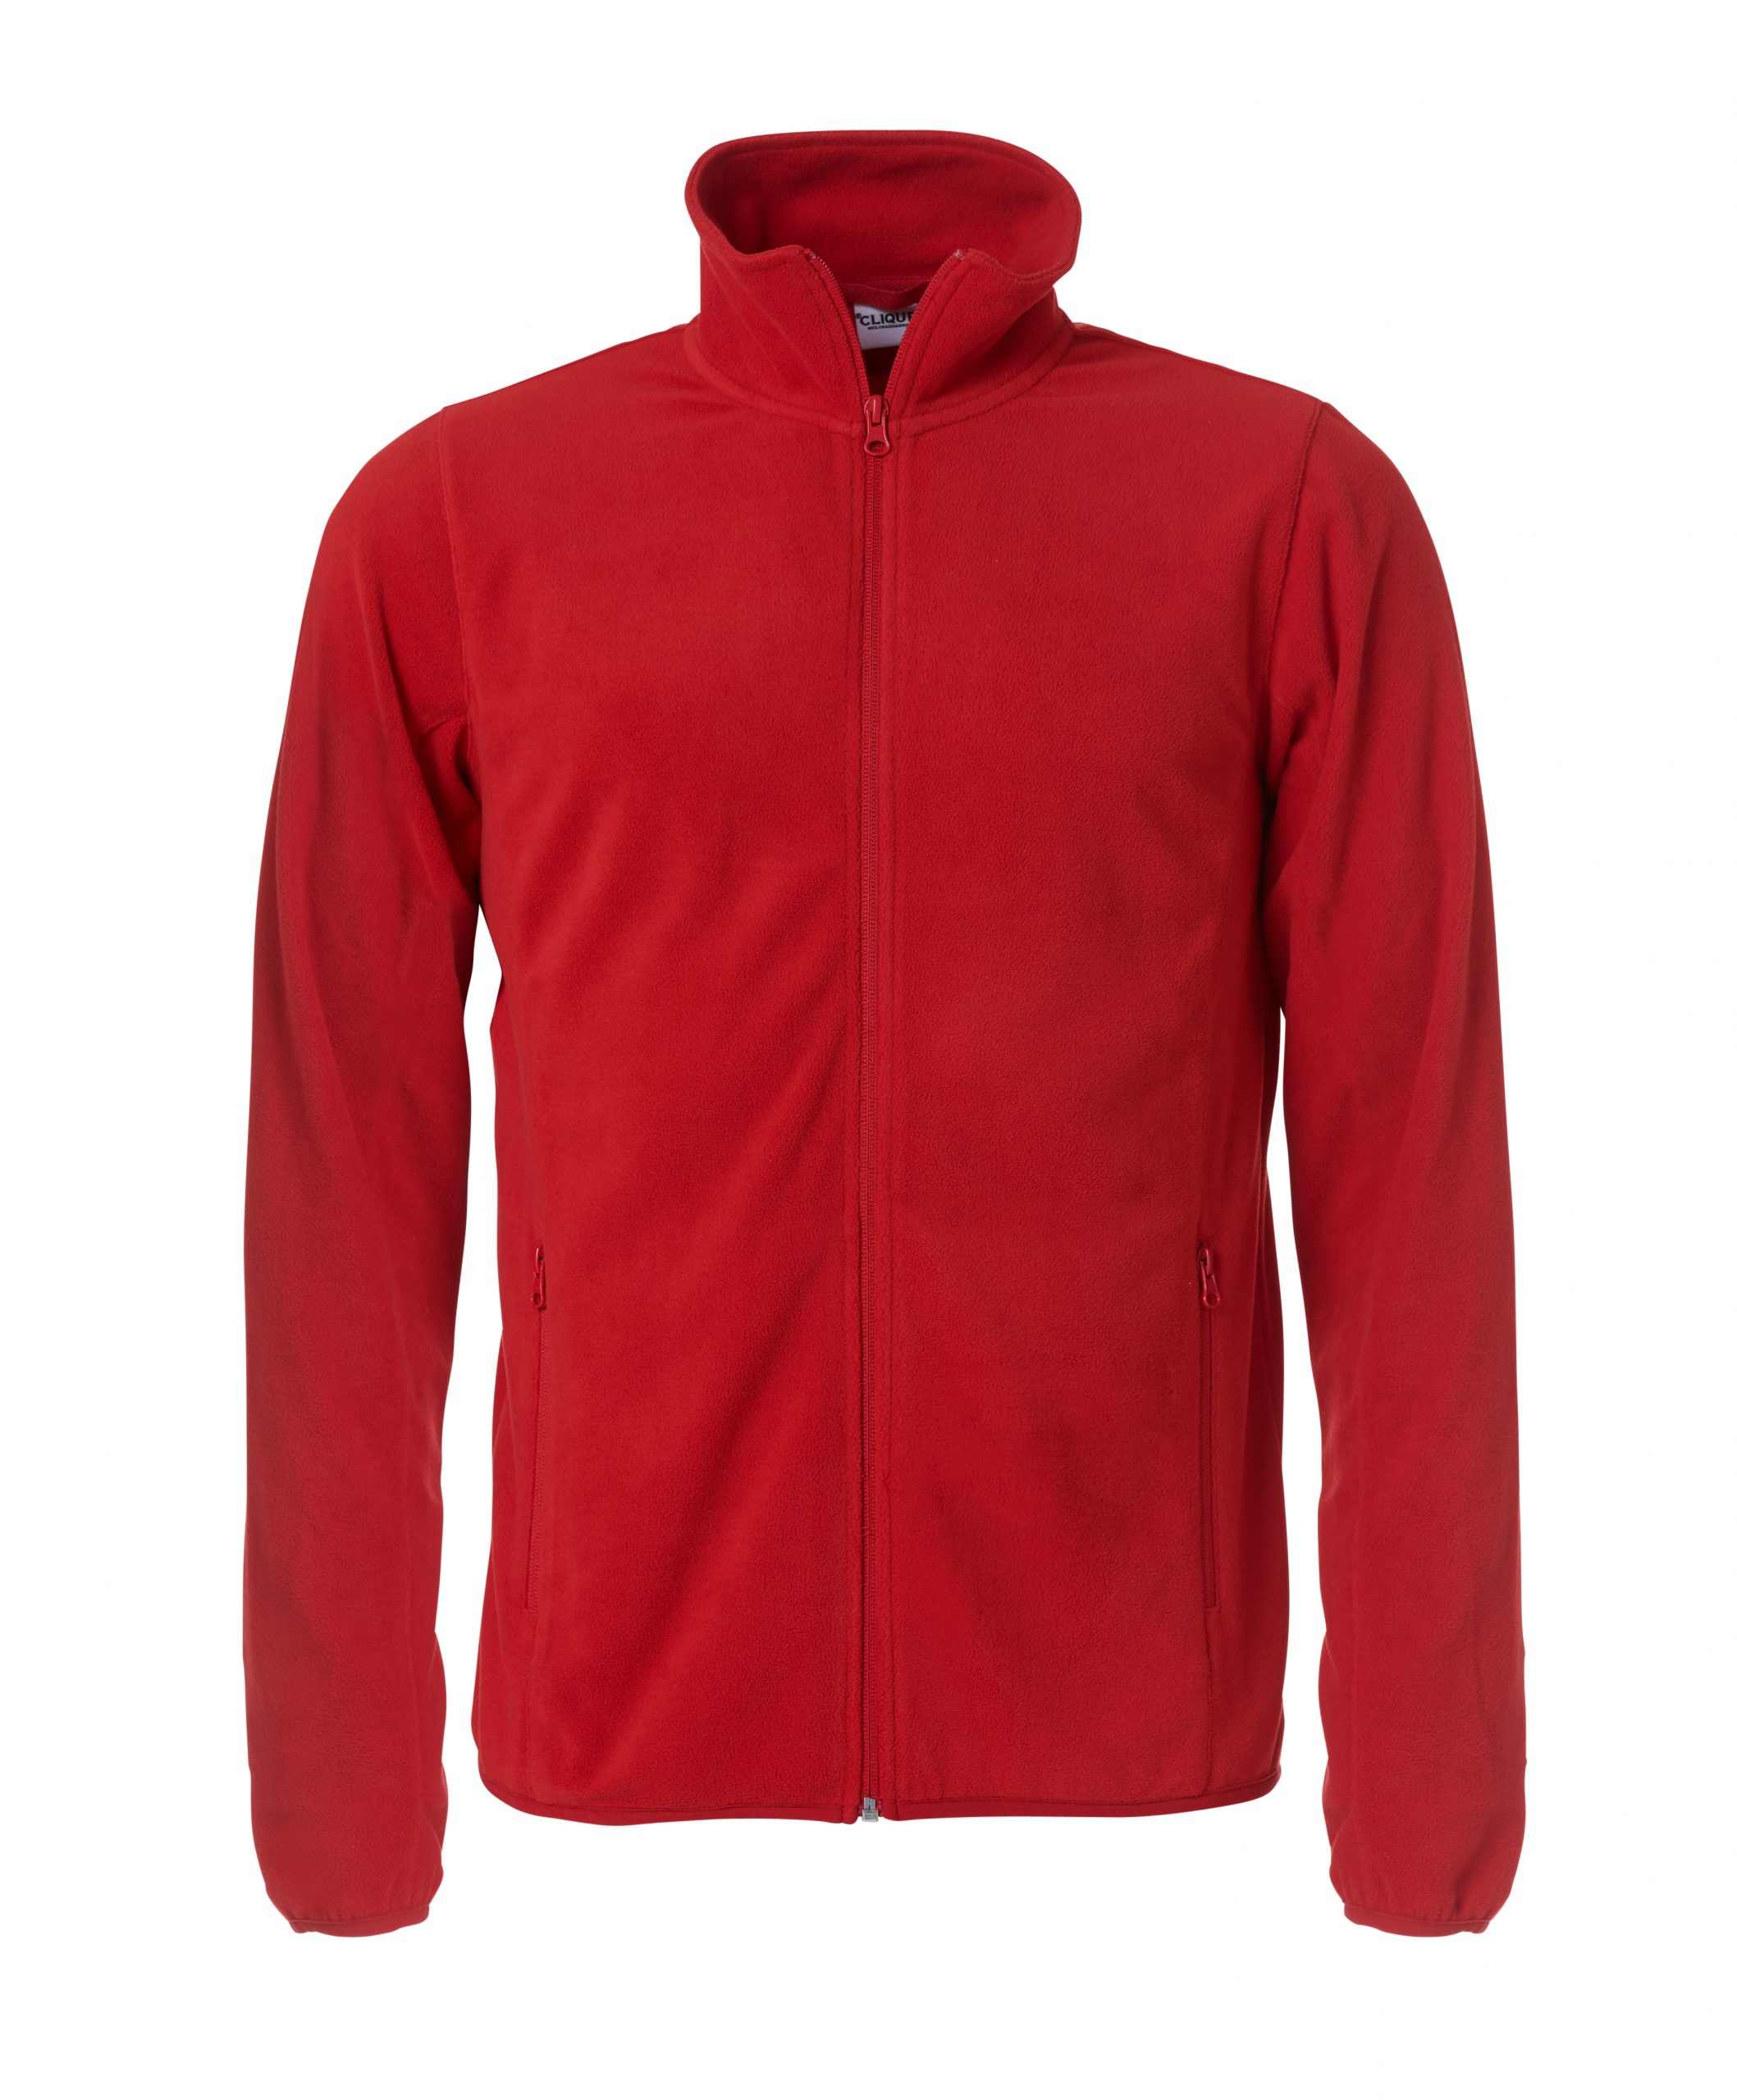 Clique Basic Micro Fleece Jacket punainen